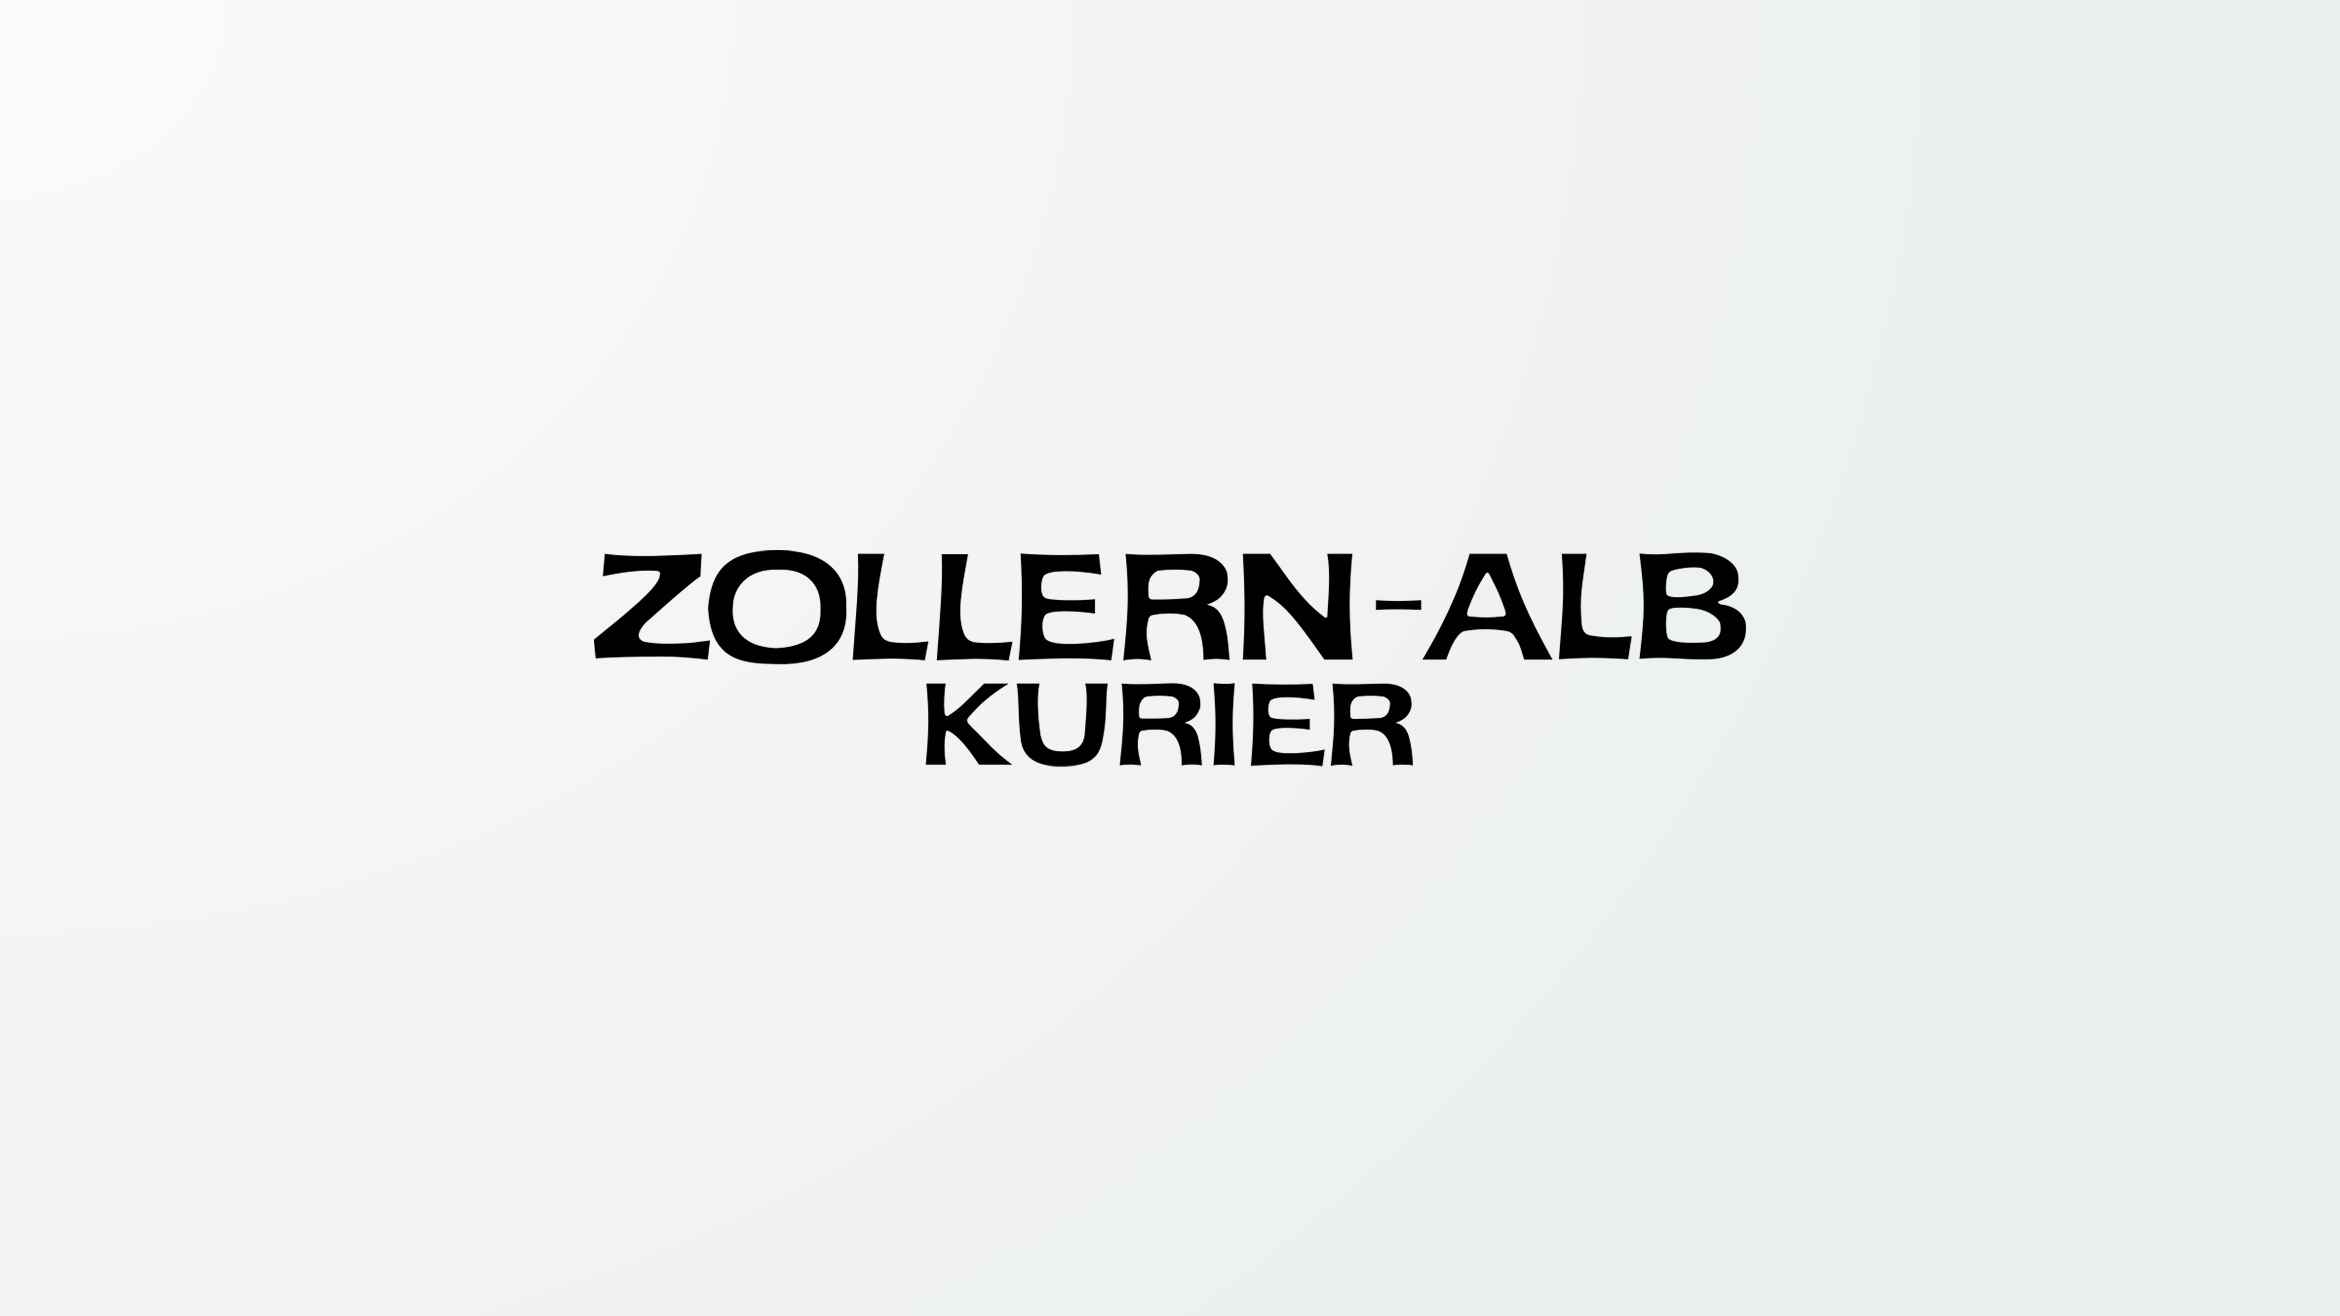 Zollern-Alb Kurier